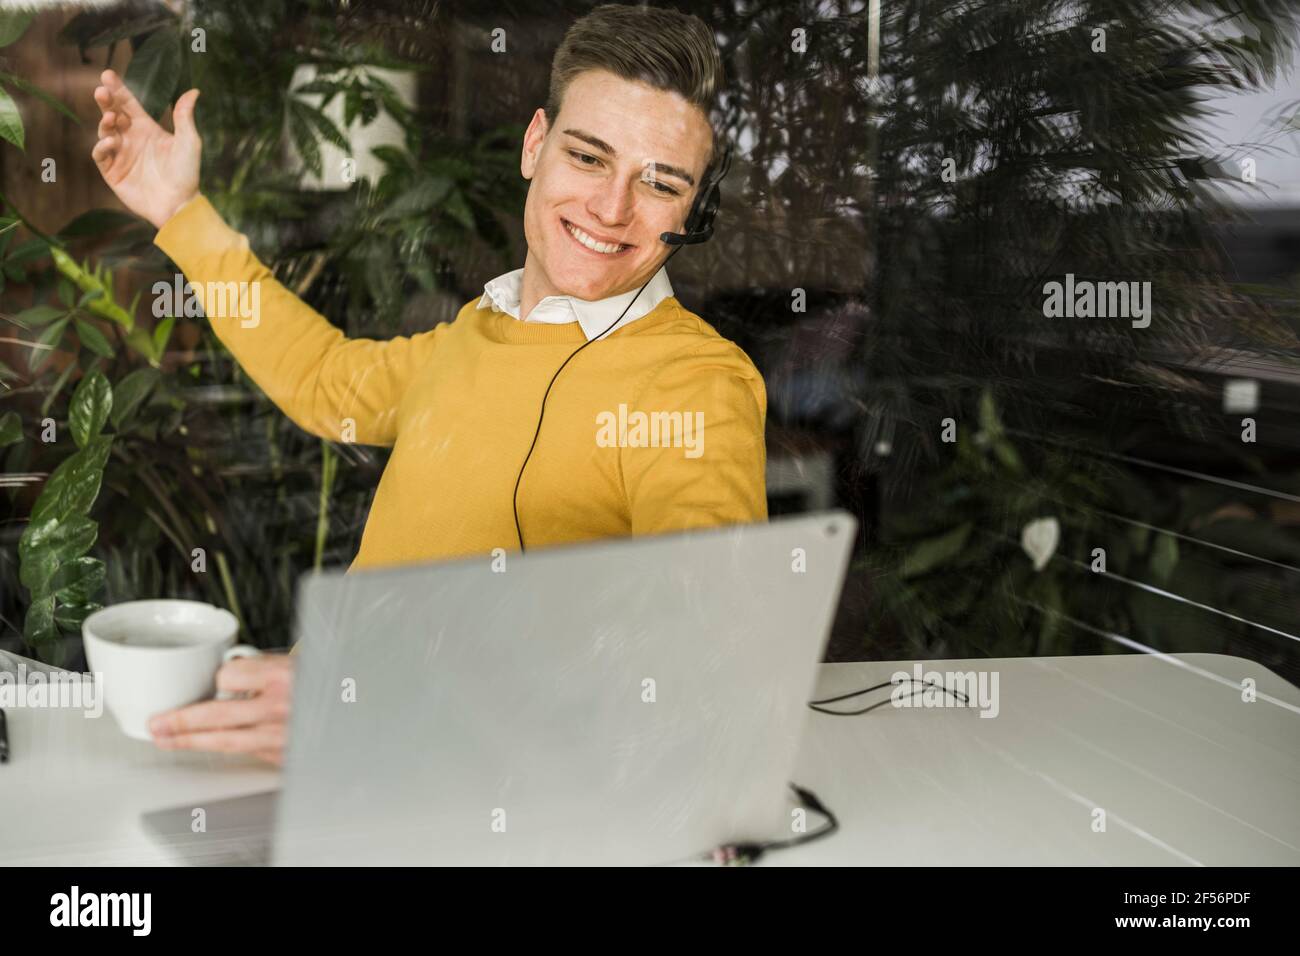 Lächelnder, männlicher Profi während der Videokonferenz Stockfoto